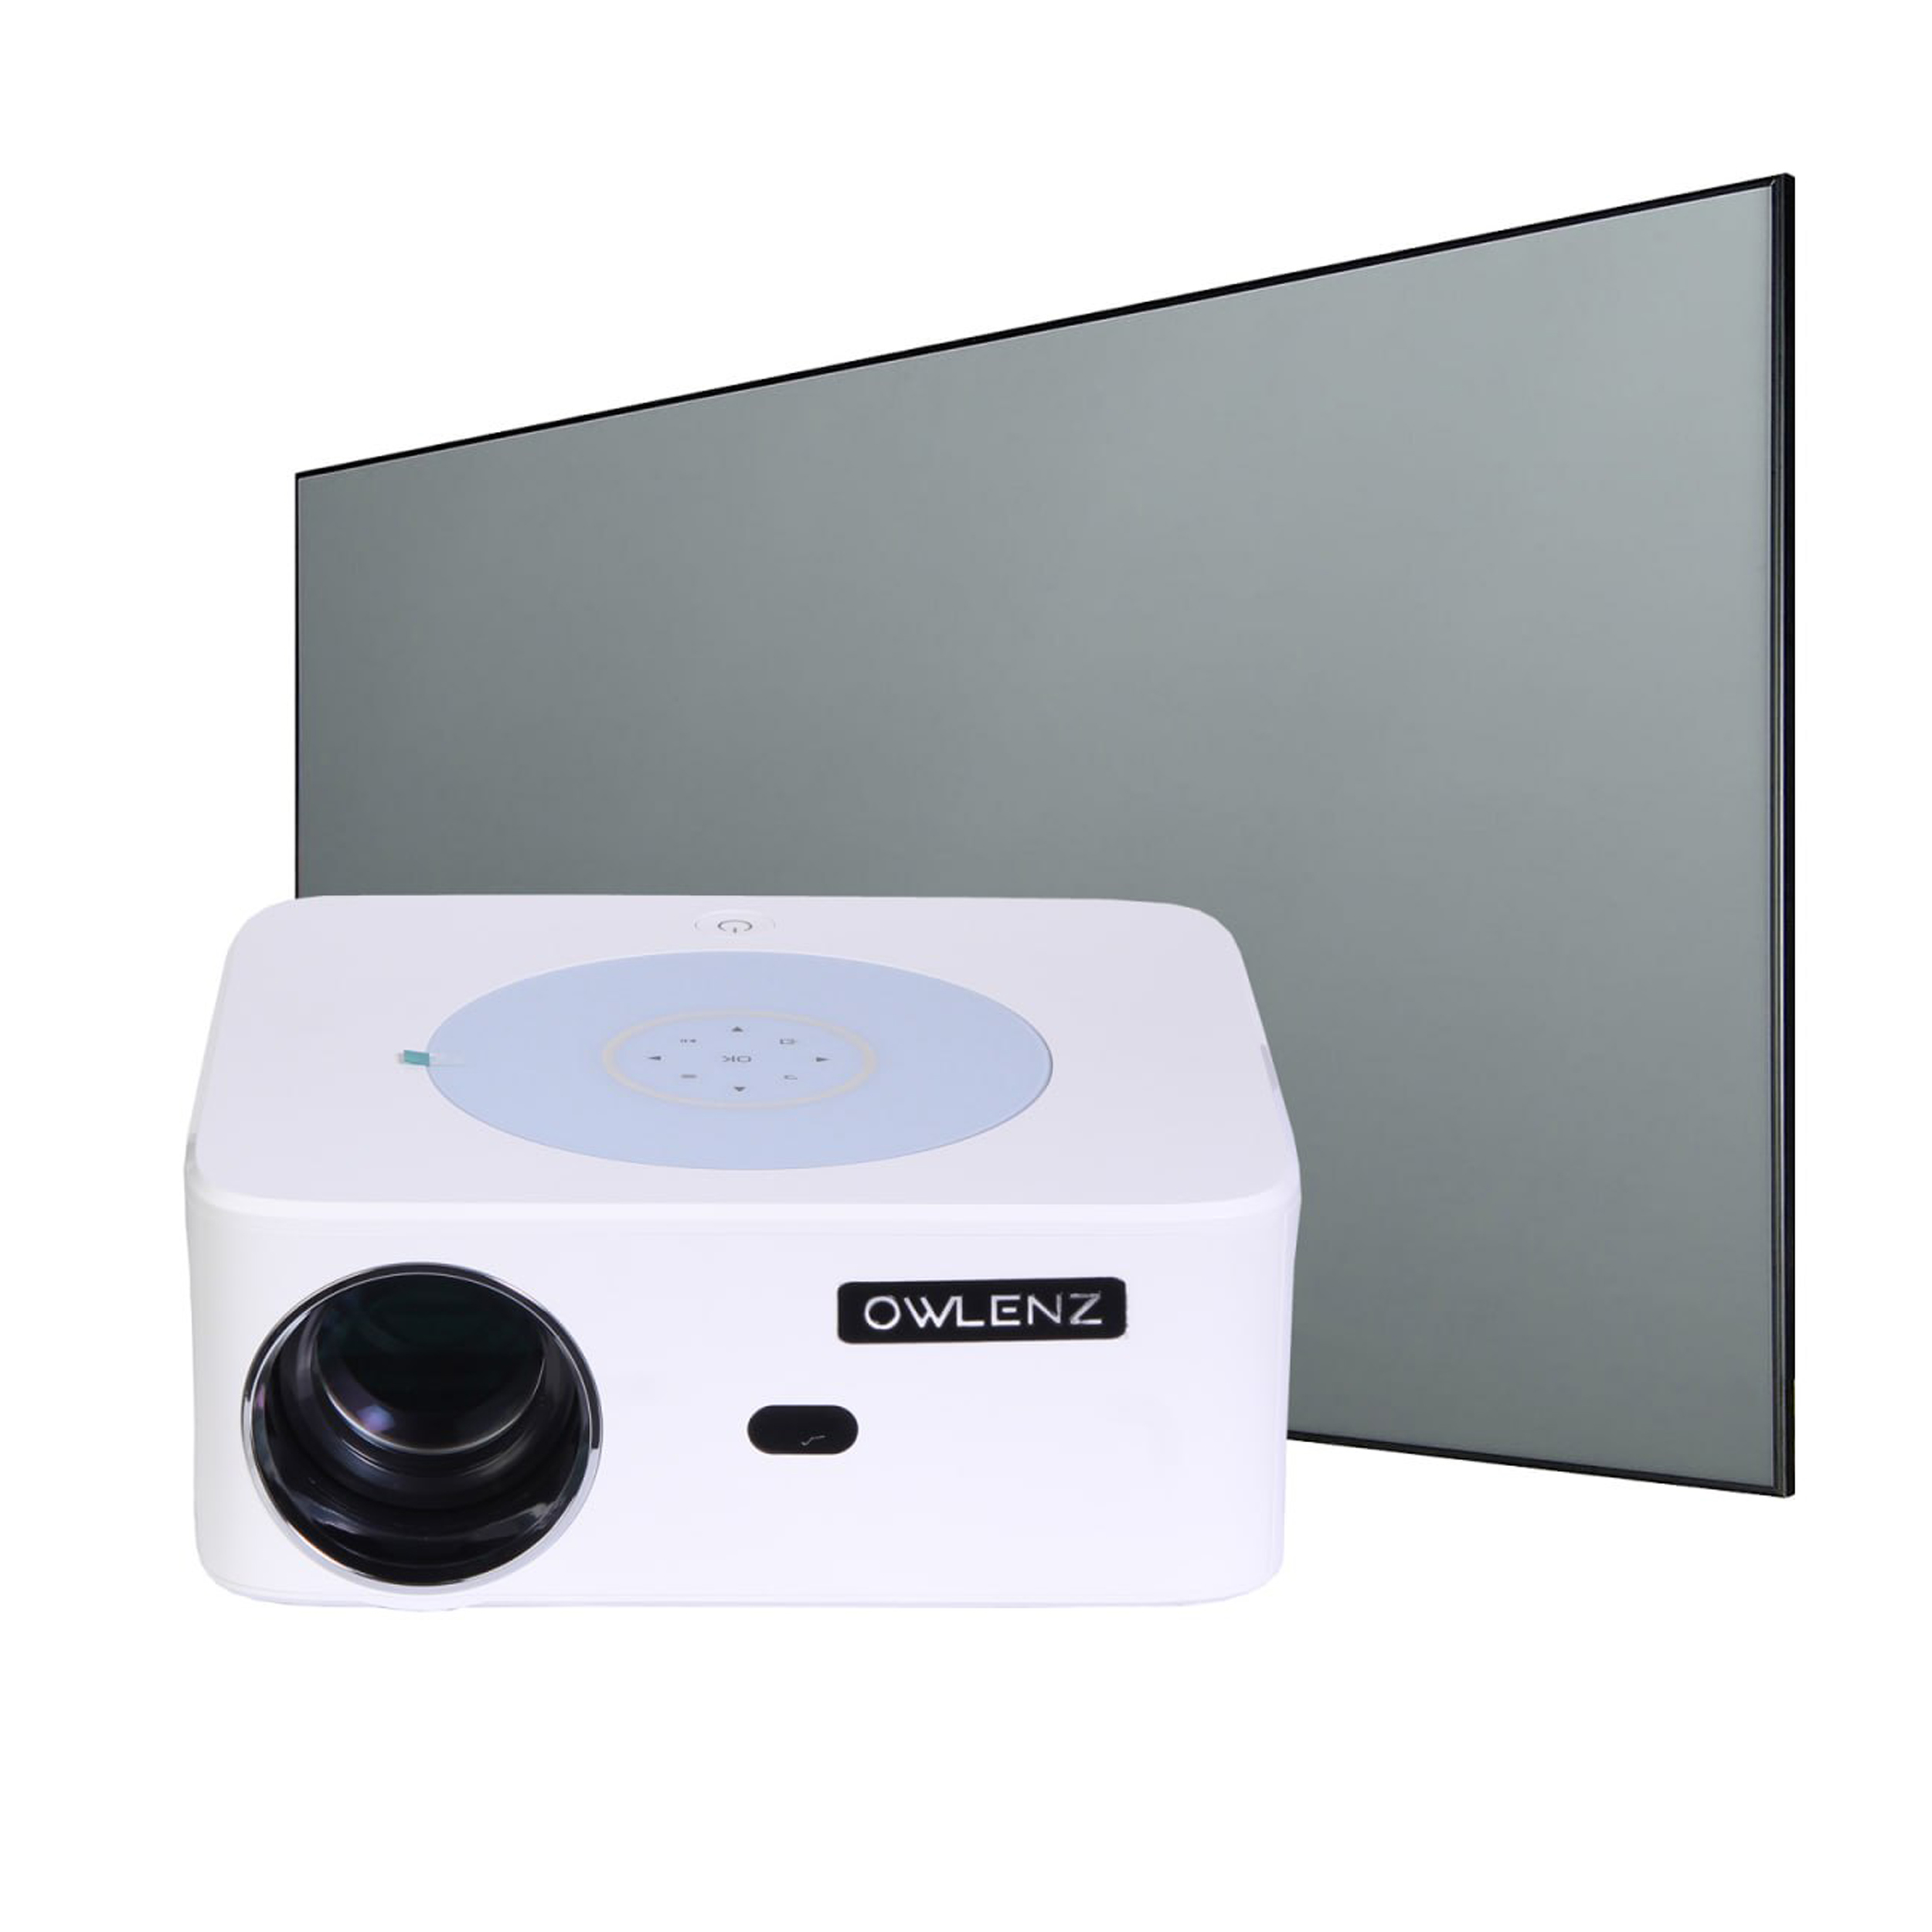 نکته خرید - قیمت روز مینی ویدئو پروژکتور النز مدل SD800 به همراه پرده نمایش خرید